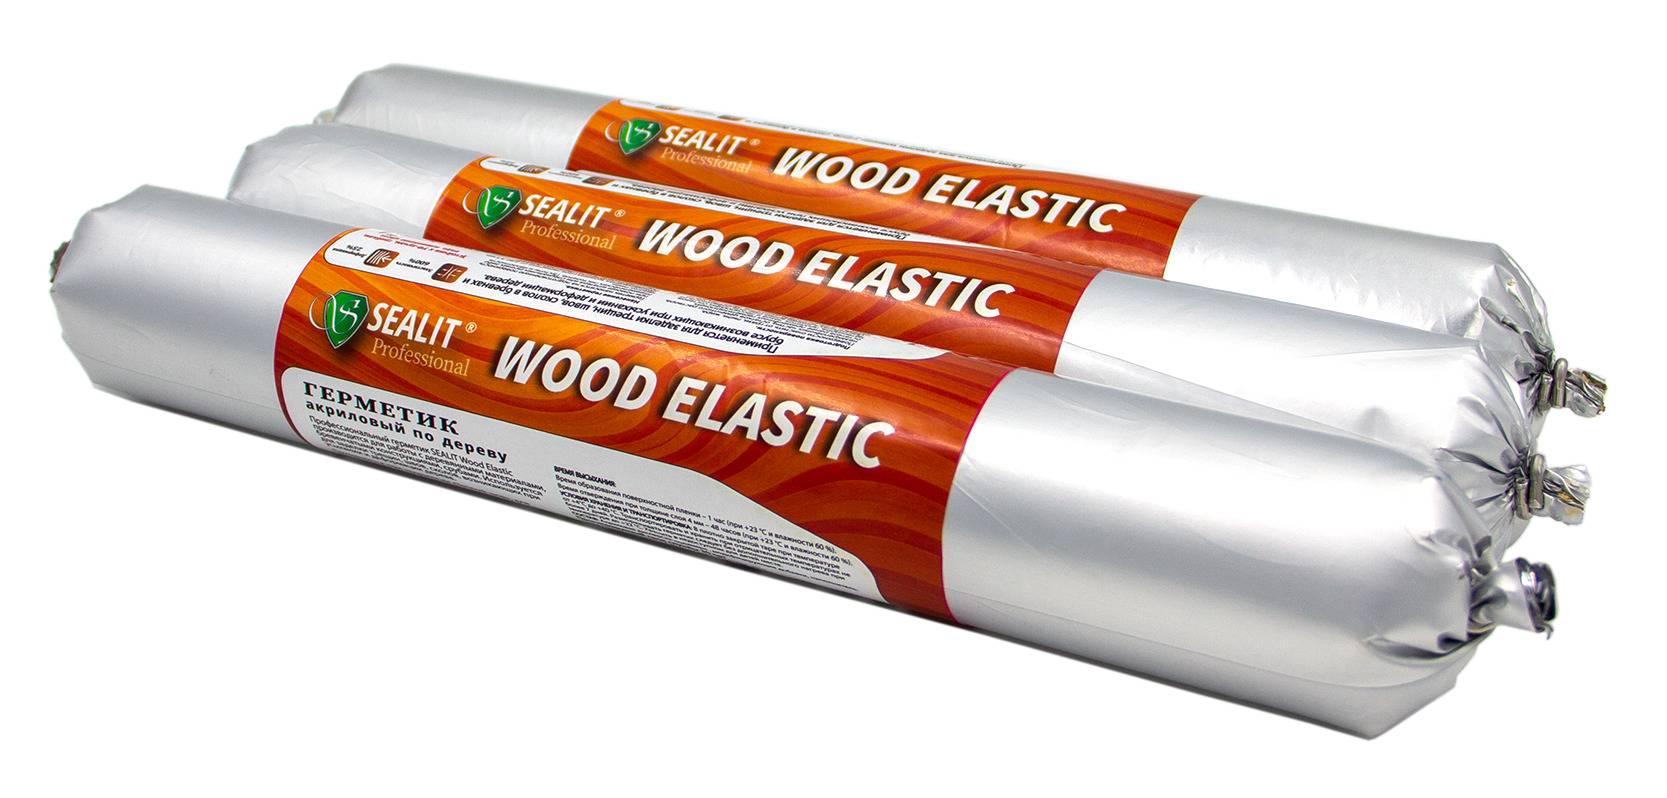 Герметик для дерева акриловый Sealit Wood Elastic, 900 гр, Бук герметик для дерева акриловый sealit wood elastic 900 гр тик